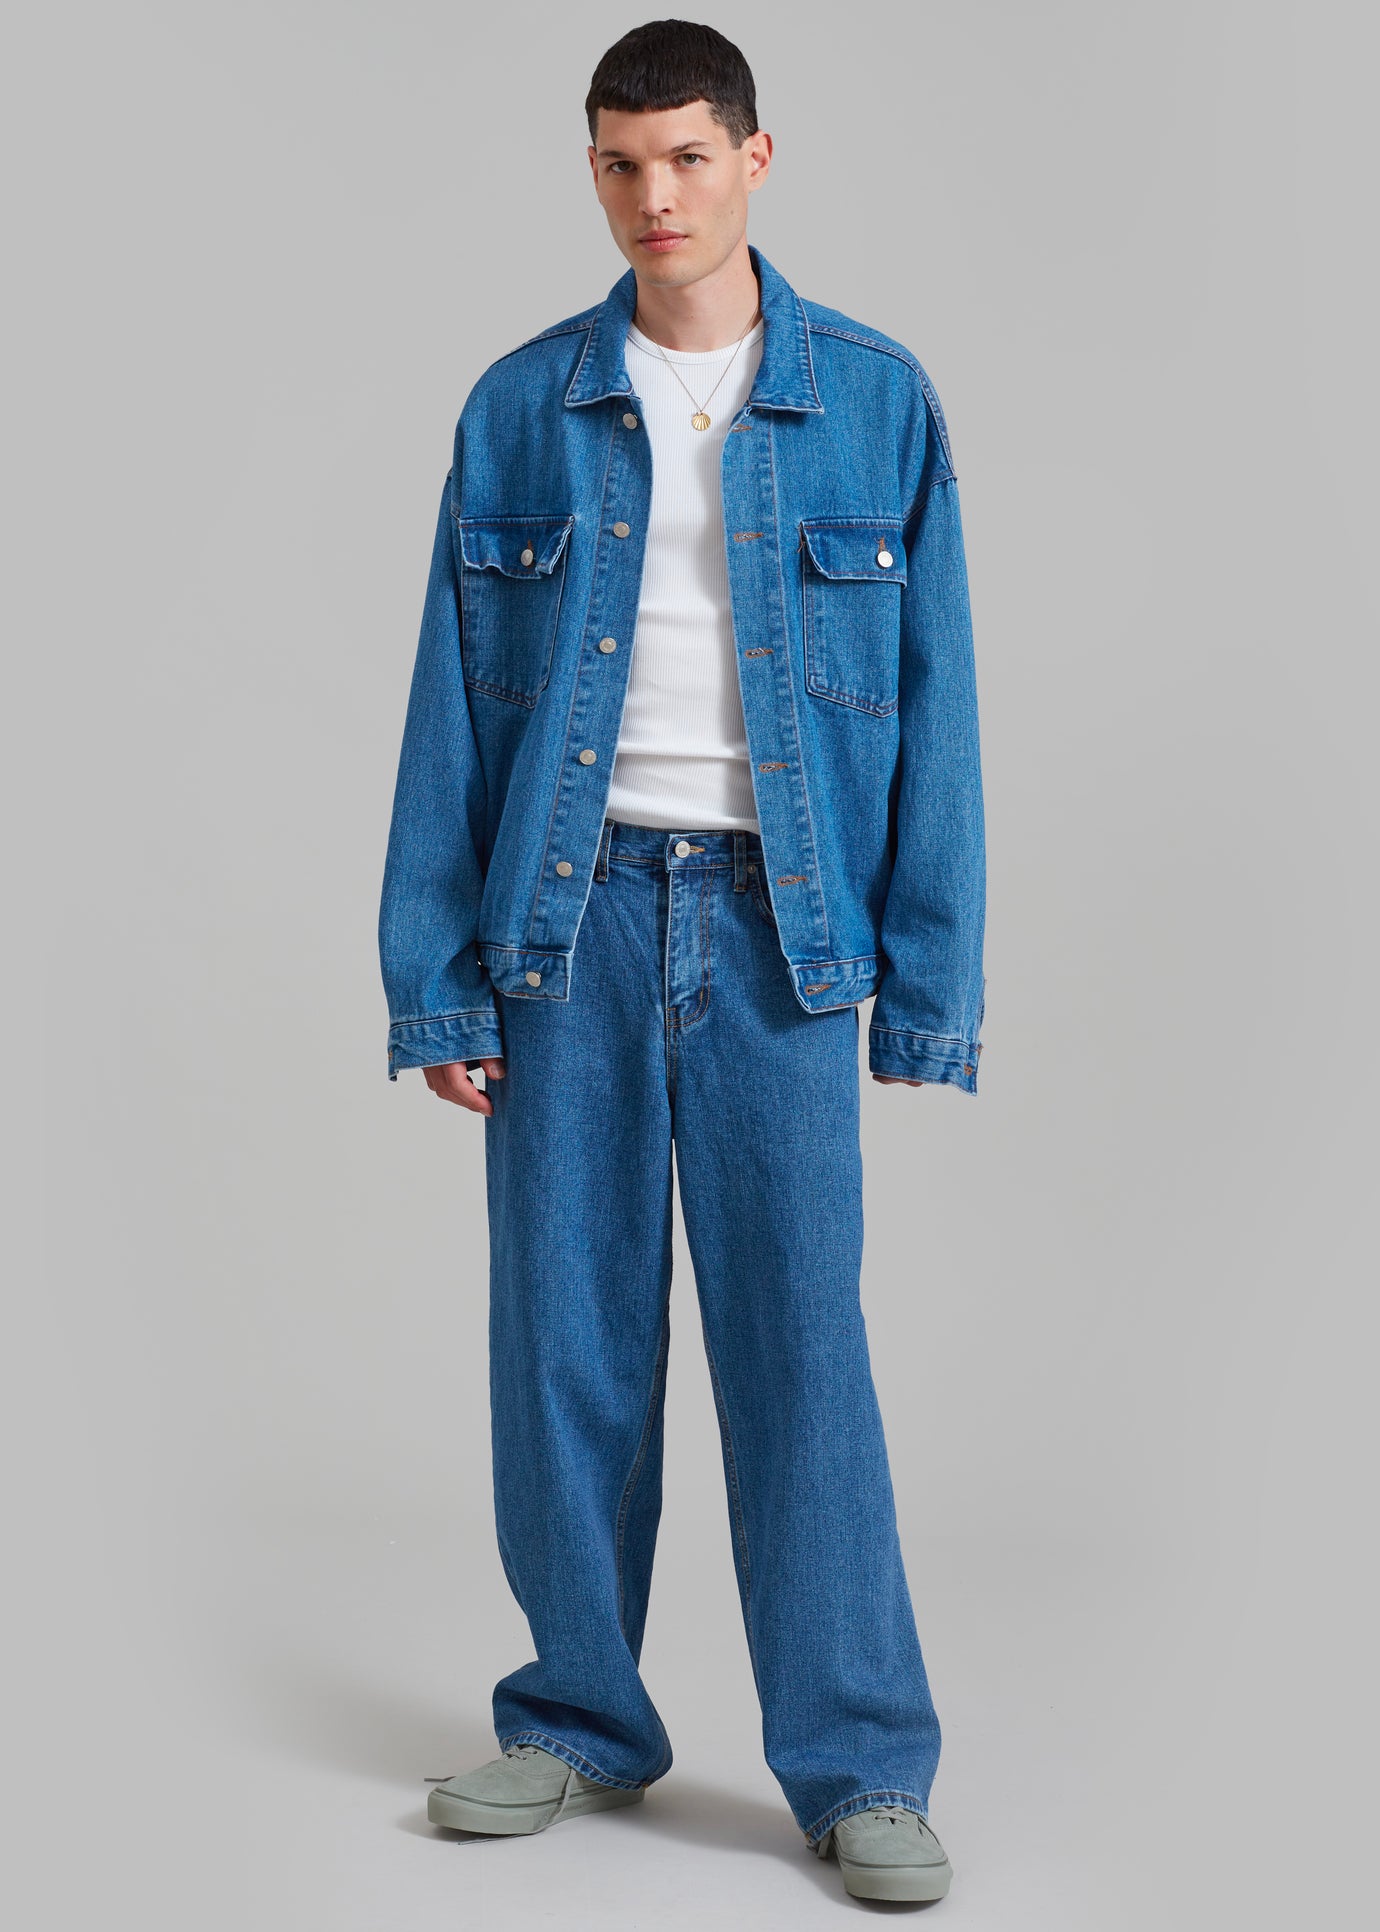 Connor Jeans - Medium Wash